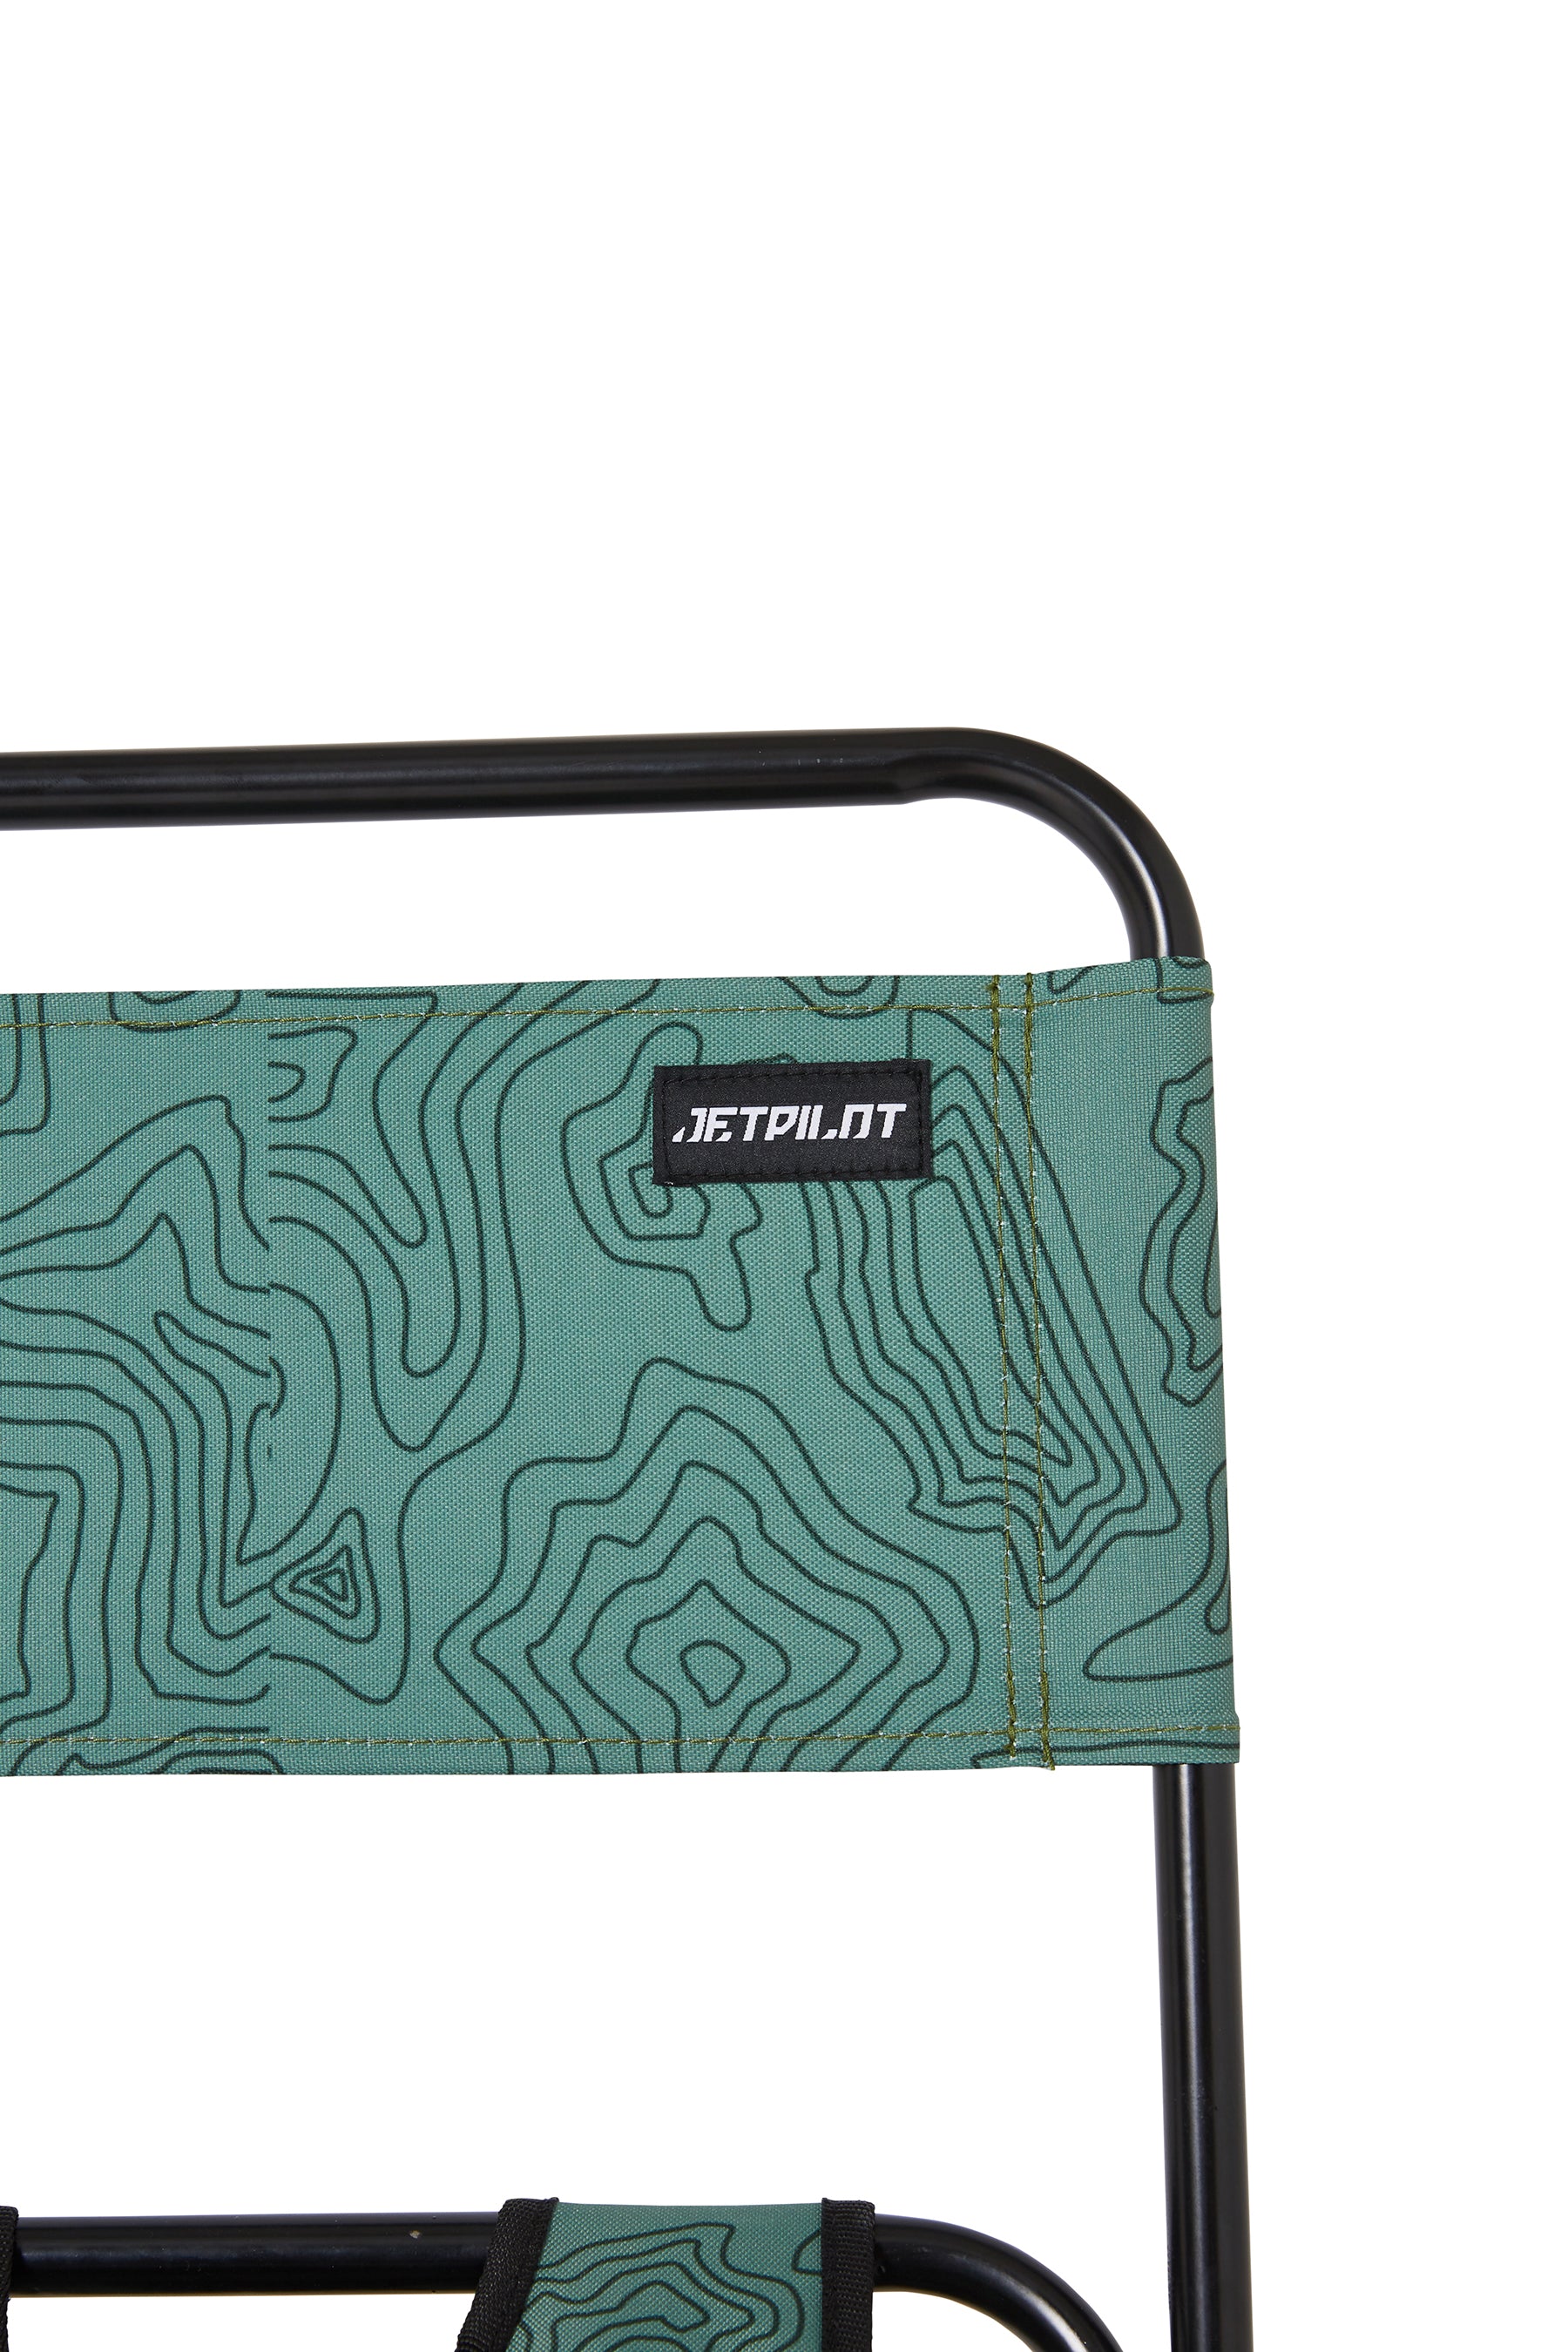 Jetpilot Back Rest Chilled Seat Bag - Sage Lifestyle 11